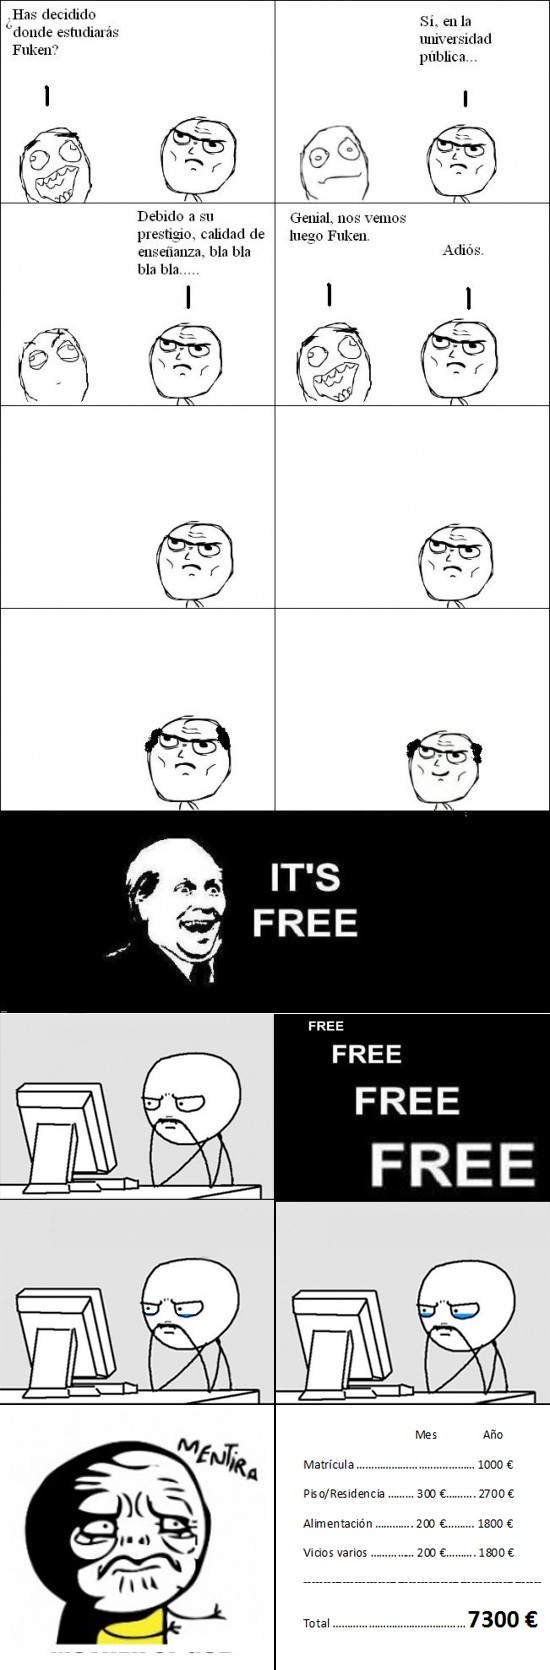 Facultad,Free,gratis,Mentira,universidad